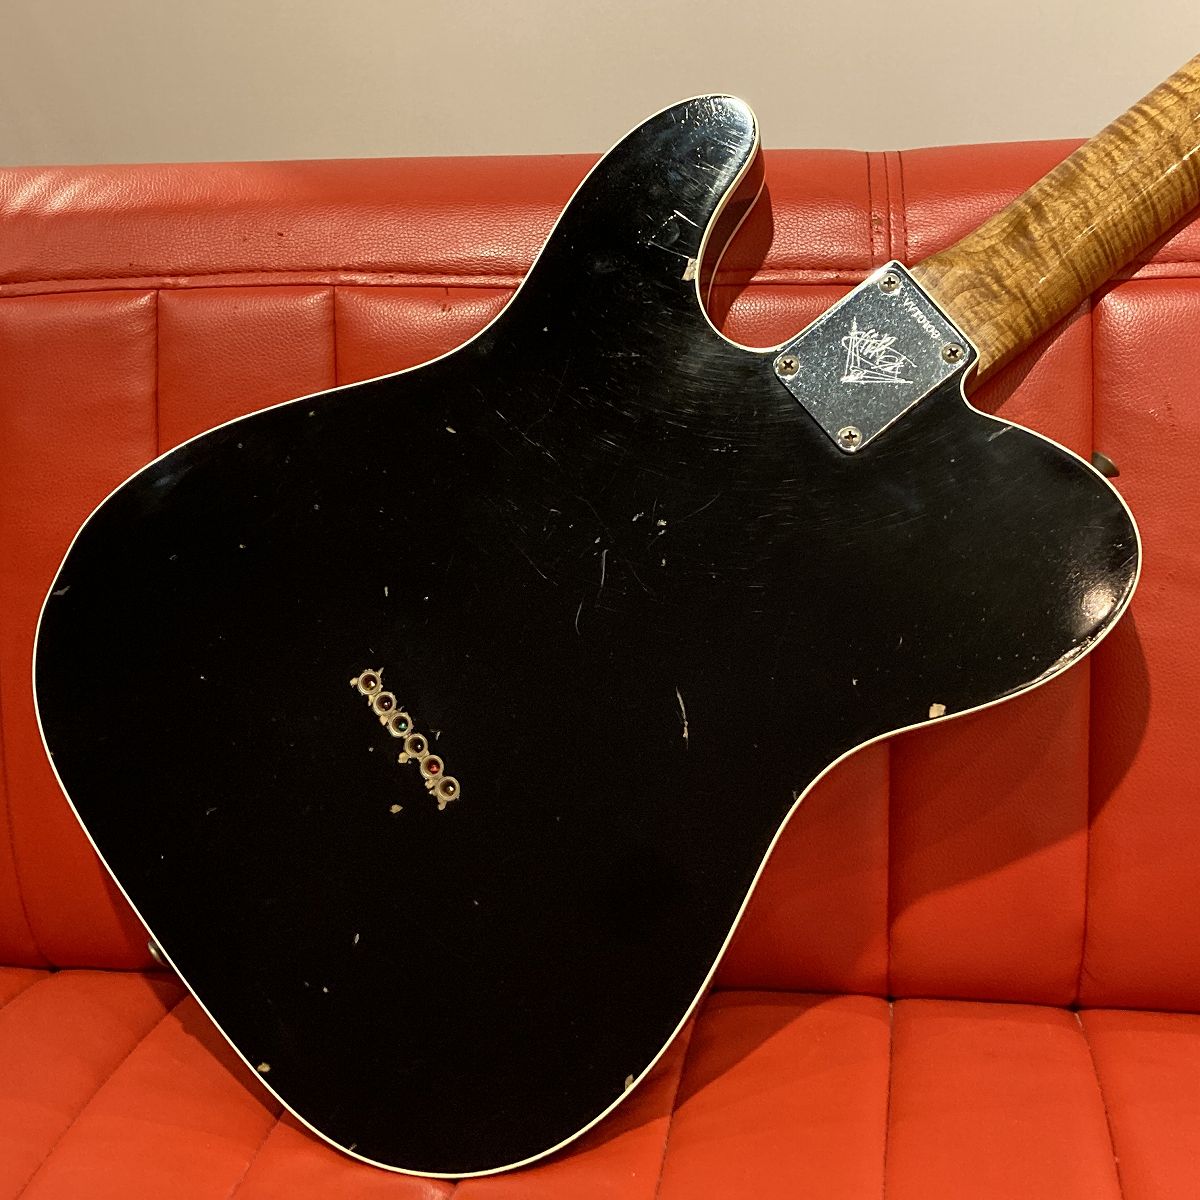 [SN VVT0108] USED Fender Custom Shop / MBS 1963 Custom Telecaster JRN Relic Aged Black by Vincent Van Trigt [04]